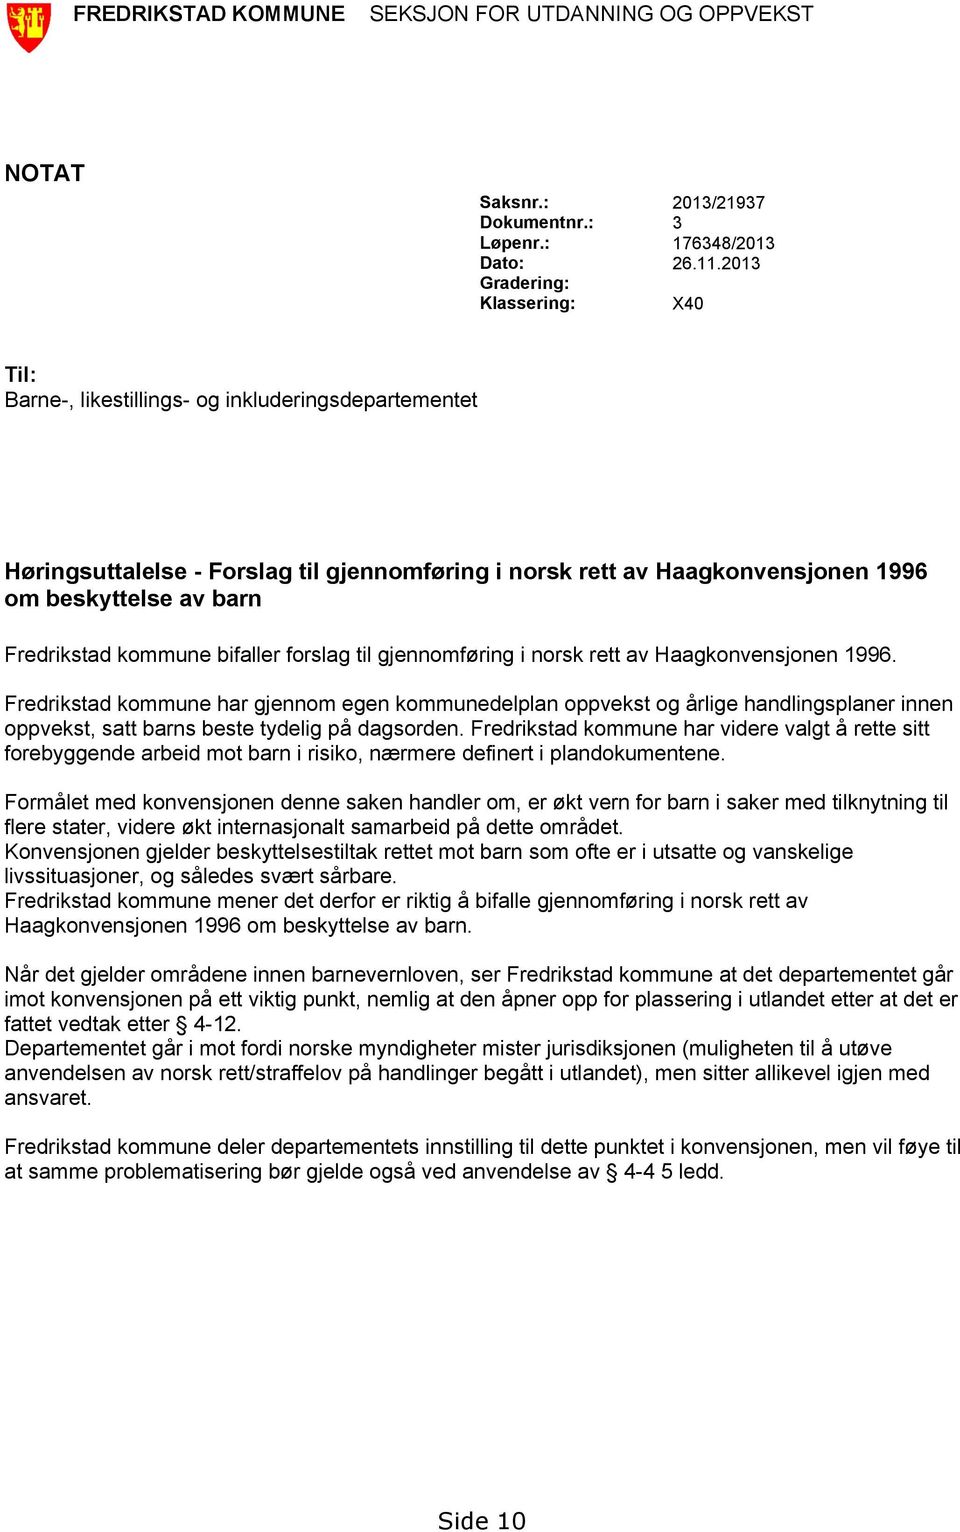 Fredrikstad kommune bifaller forslag til gjennomføring i norsk rett av Haagkonvensjonen 1996.